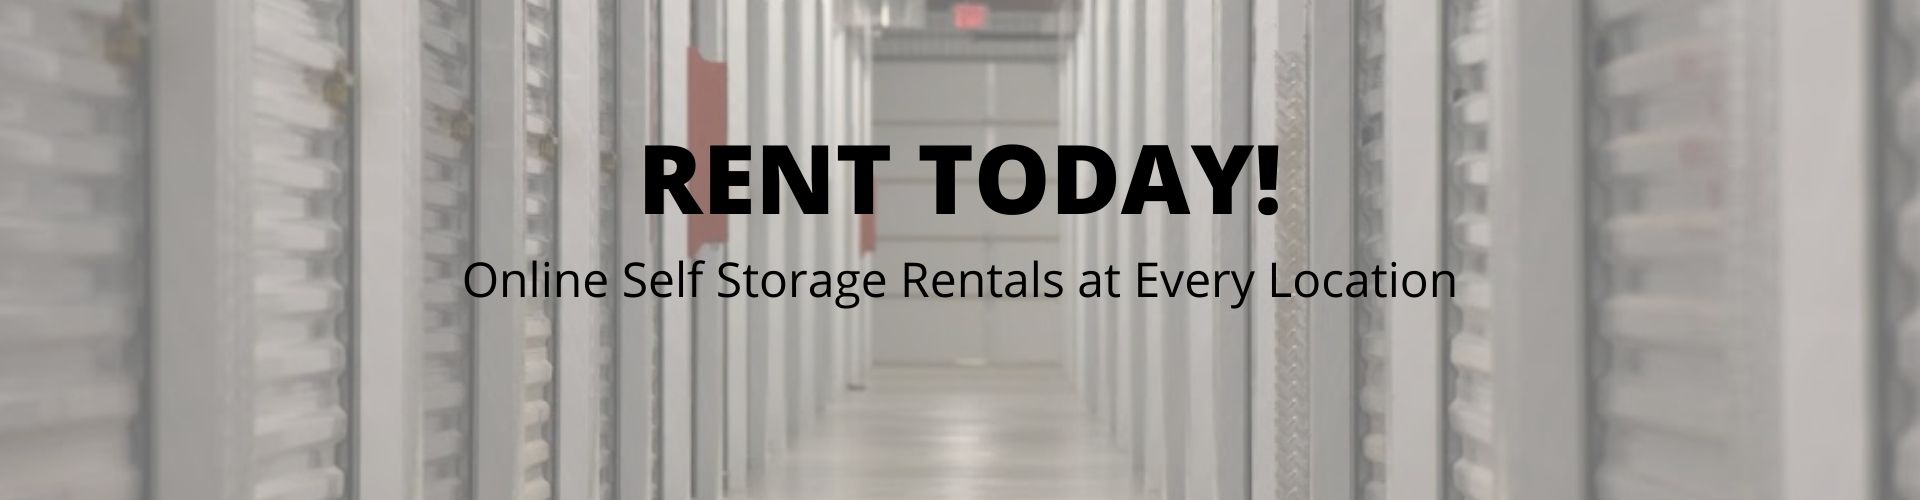 online storage rentals at ABC Storage in Harrisburg PA